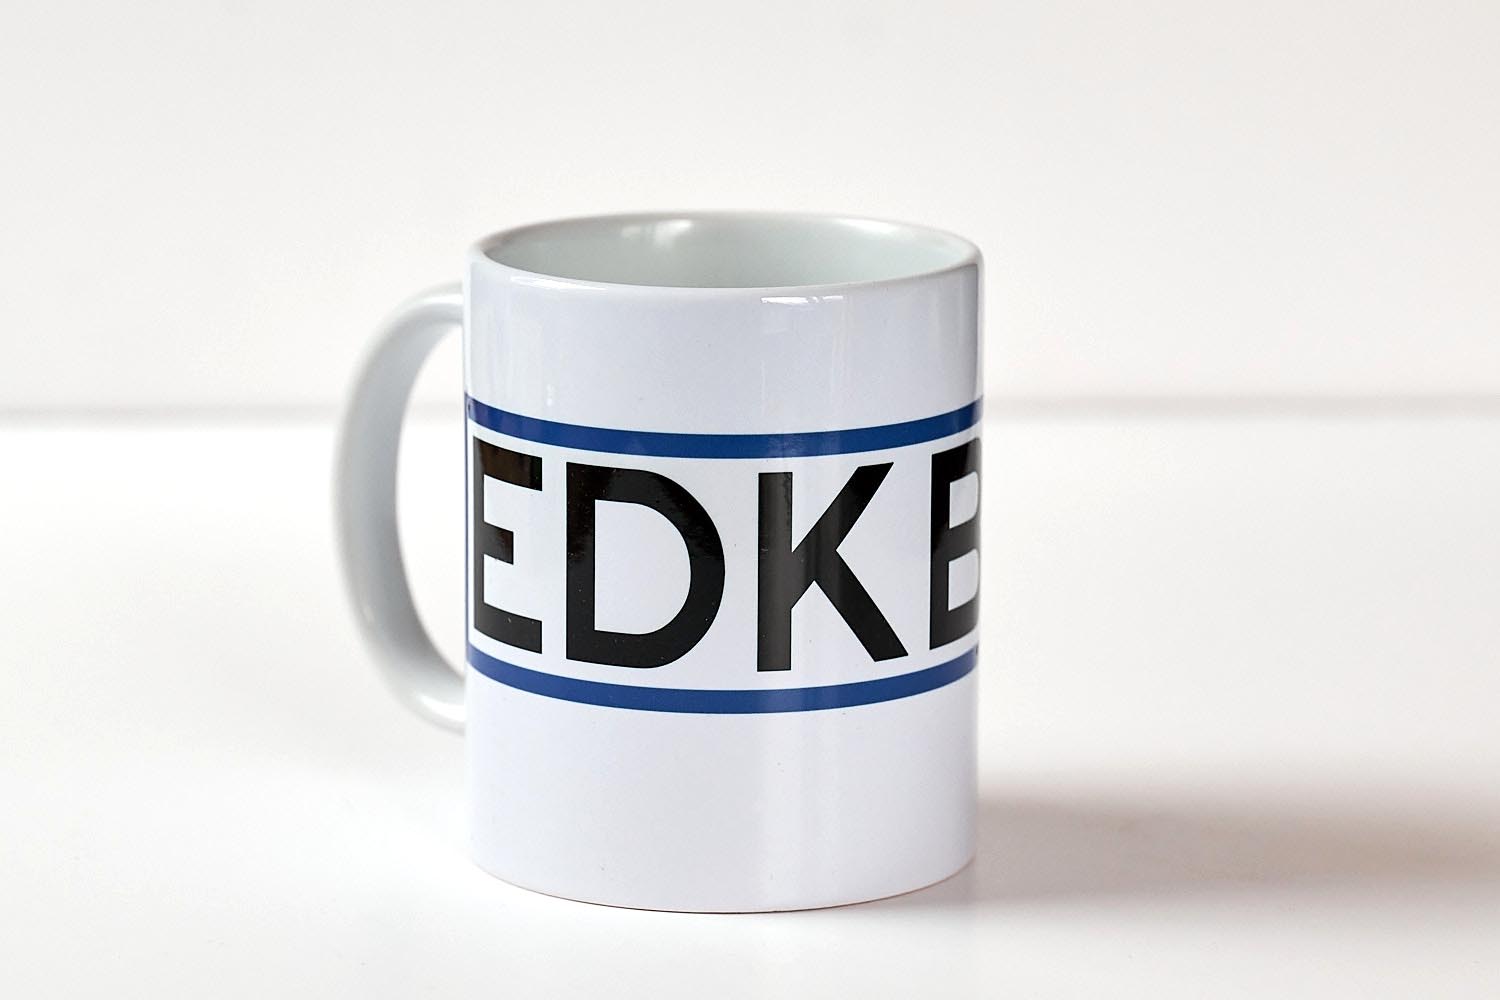 Die EDKB-Kaffee-Tasse